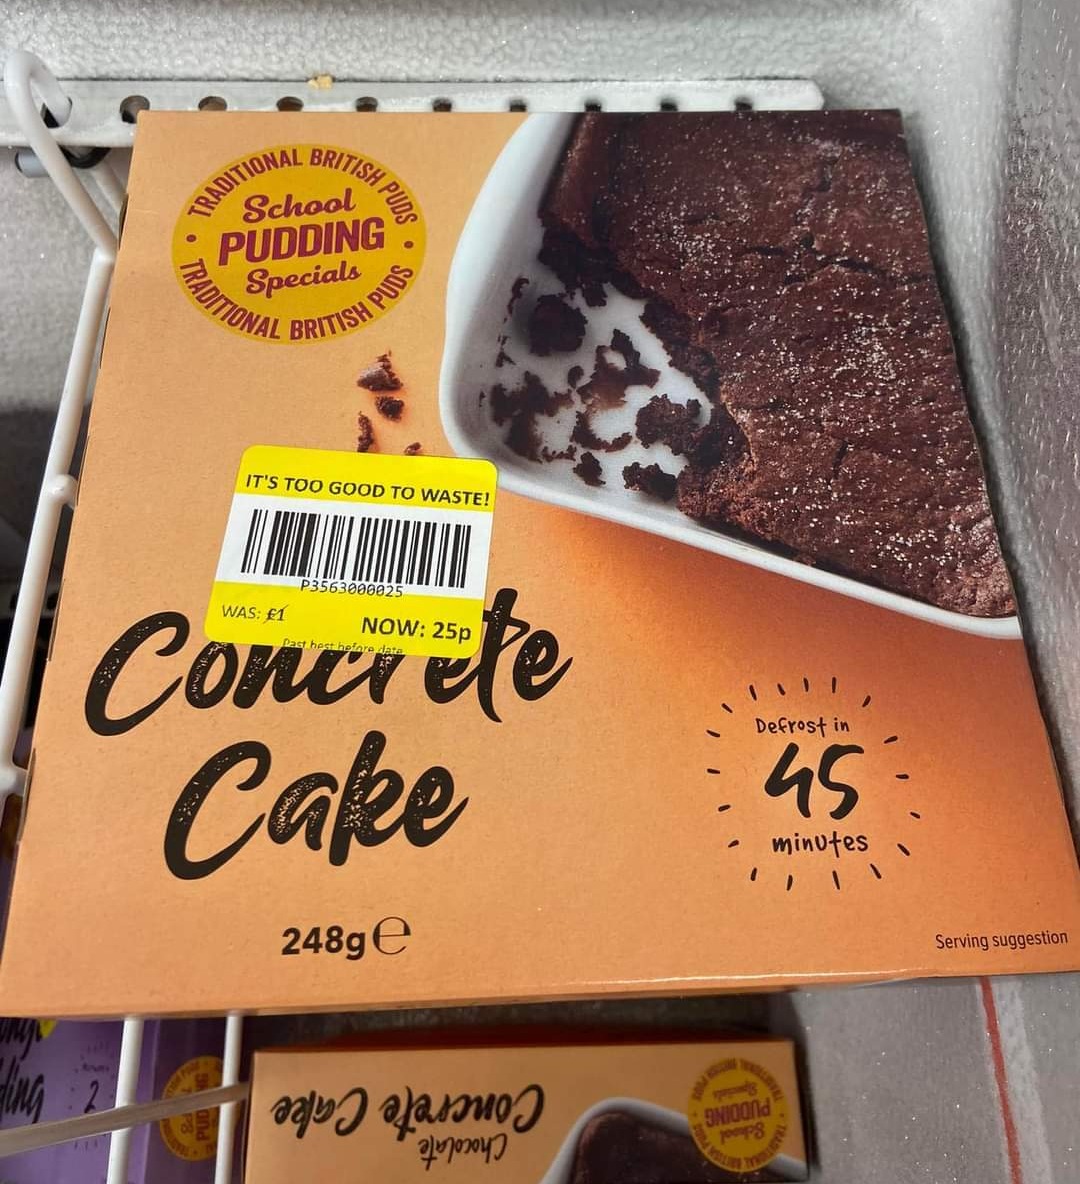 Der Schokoladenkuchen wurde sogar noch weiter reduziert, wobei die große Leckerei nur 25 Pence kostete